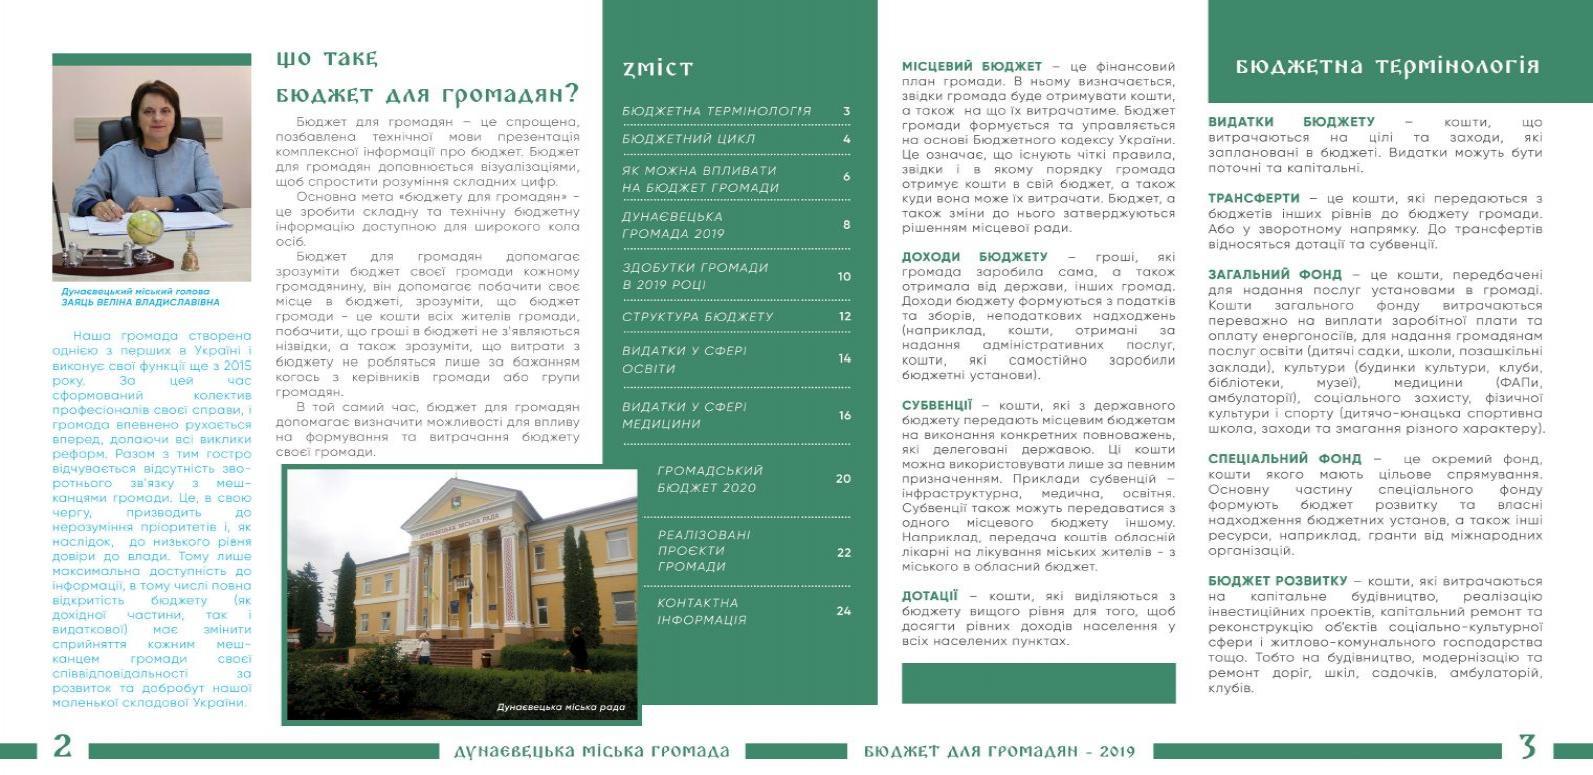 http://dunrada.gov.ua/uploadfile/archive_article/2020/09/04/2020-09-04_8469/images/images-6626.jpg